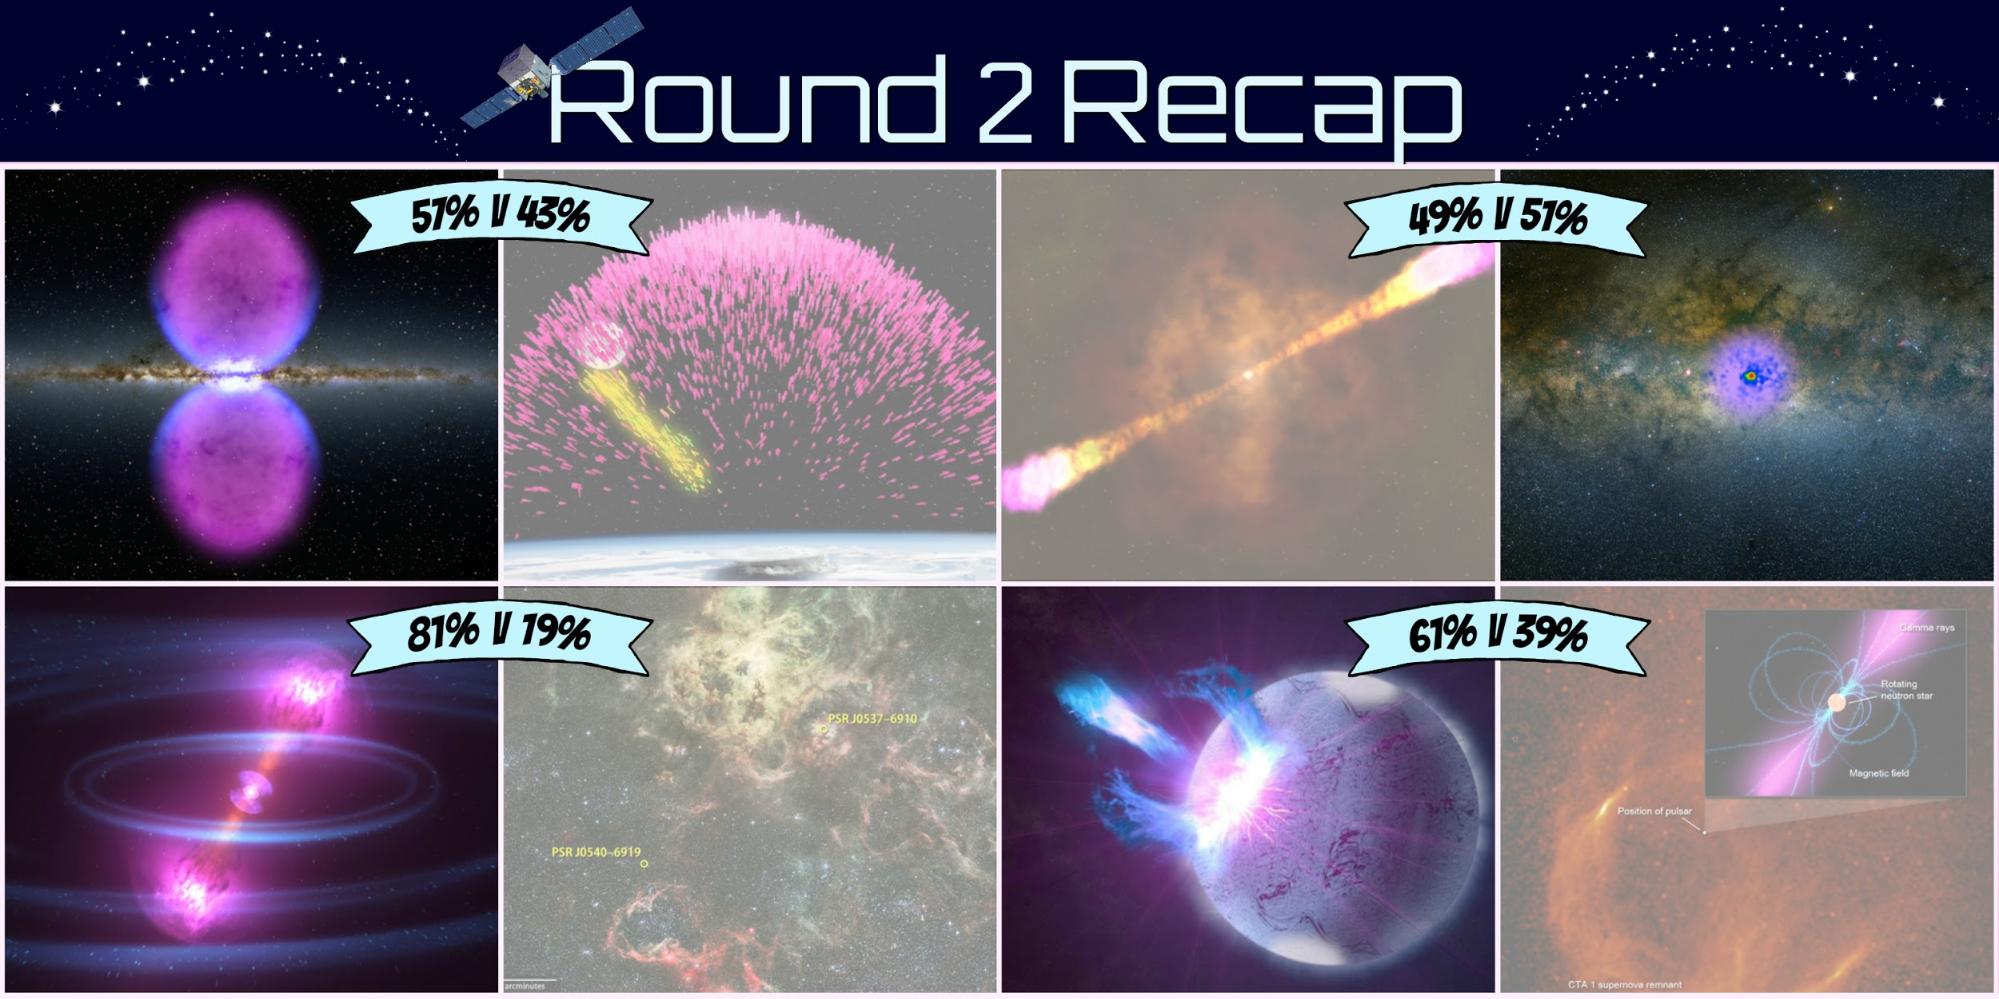 Overview of Fermi Playoffs Round 2
results